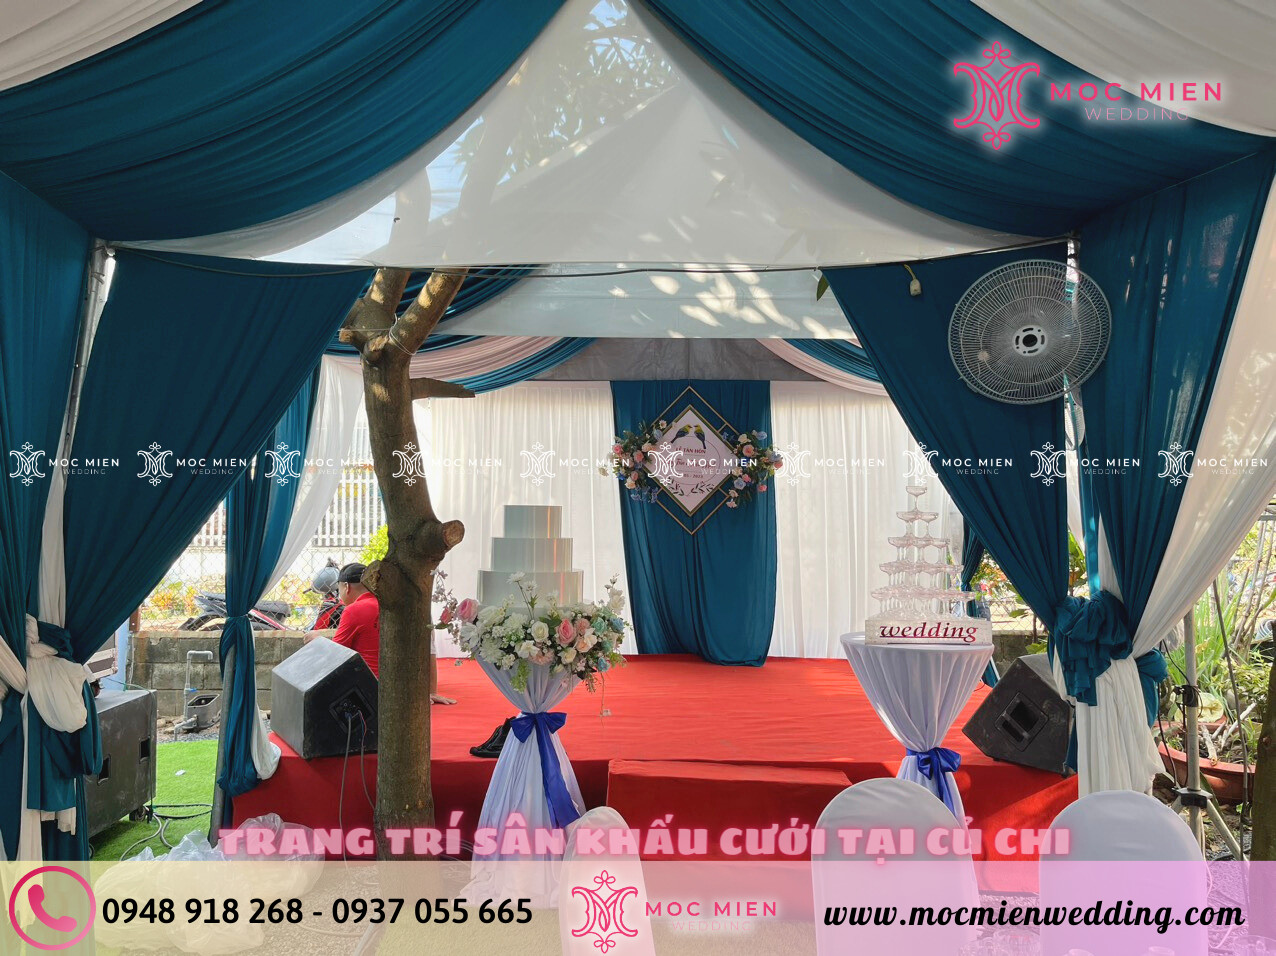 Cho thuê sân khấu trang trí backdrop sân khấu cho tiệc cưới tại Củ Chi 